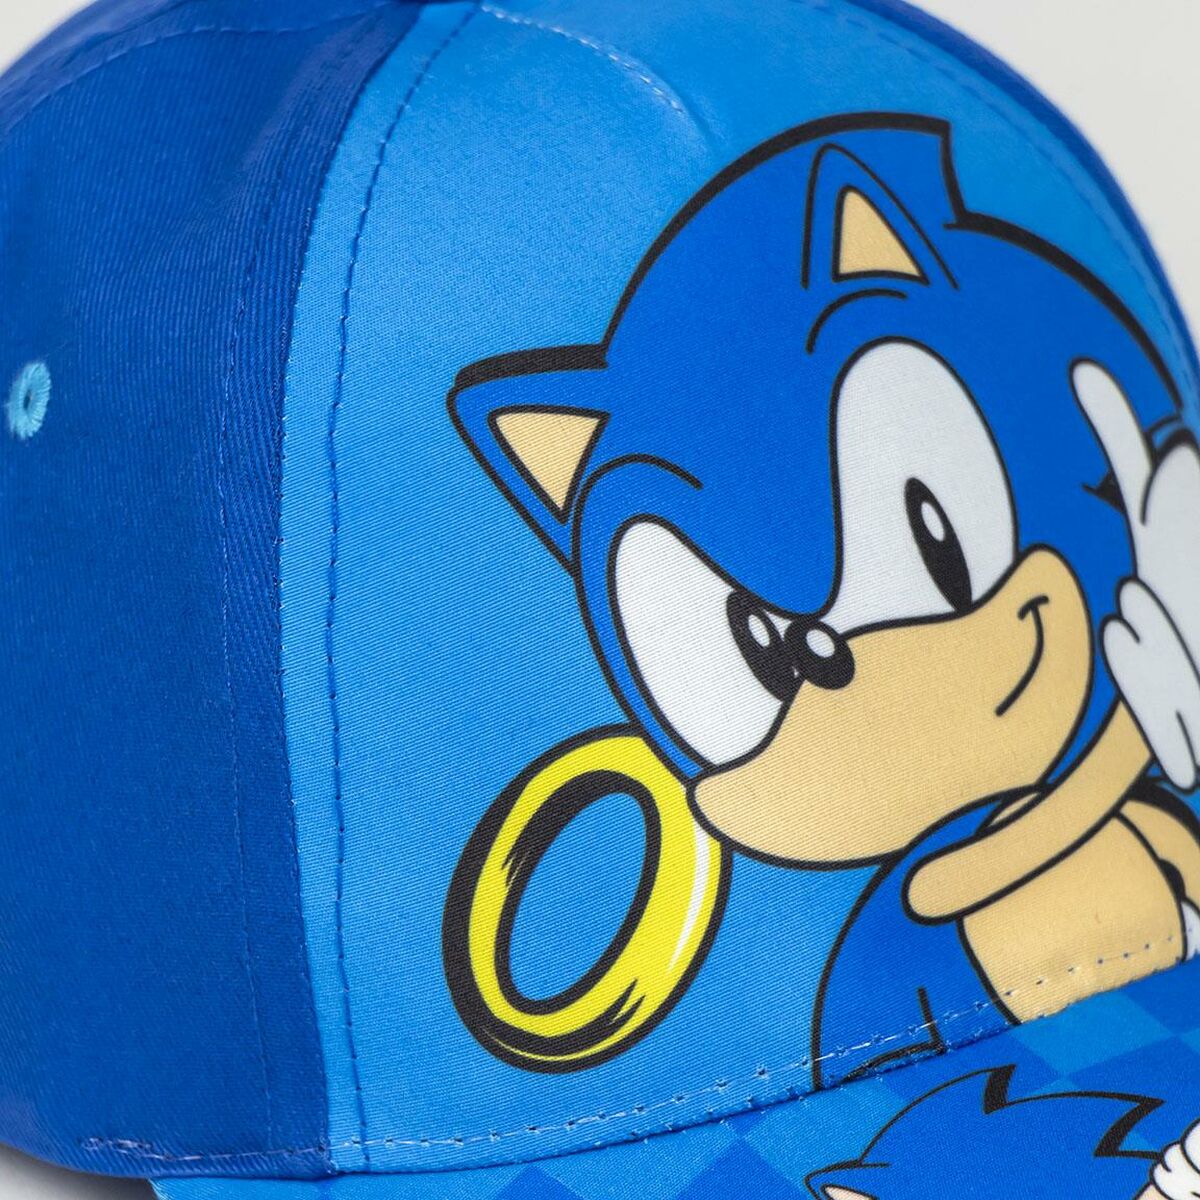 Cappellino per Bambini Sonic Blu scuro (53 cm)